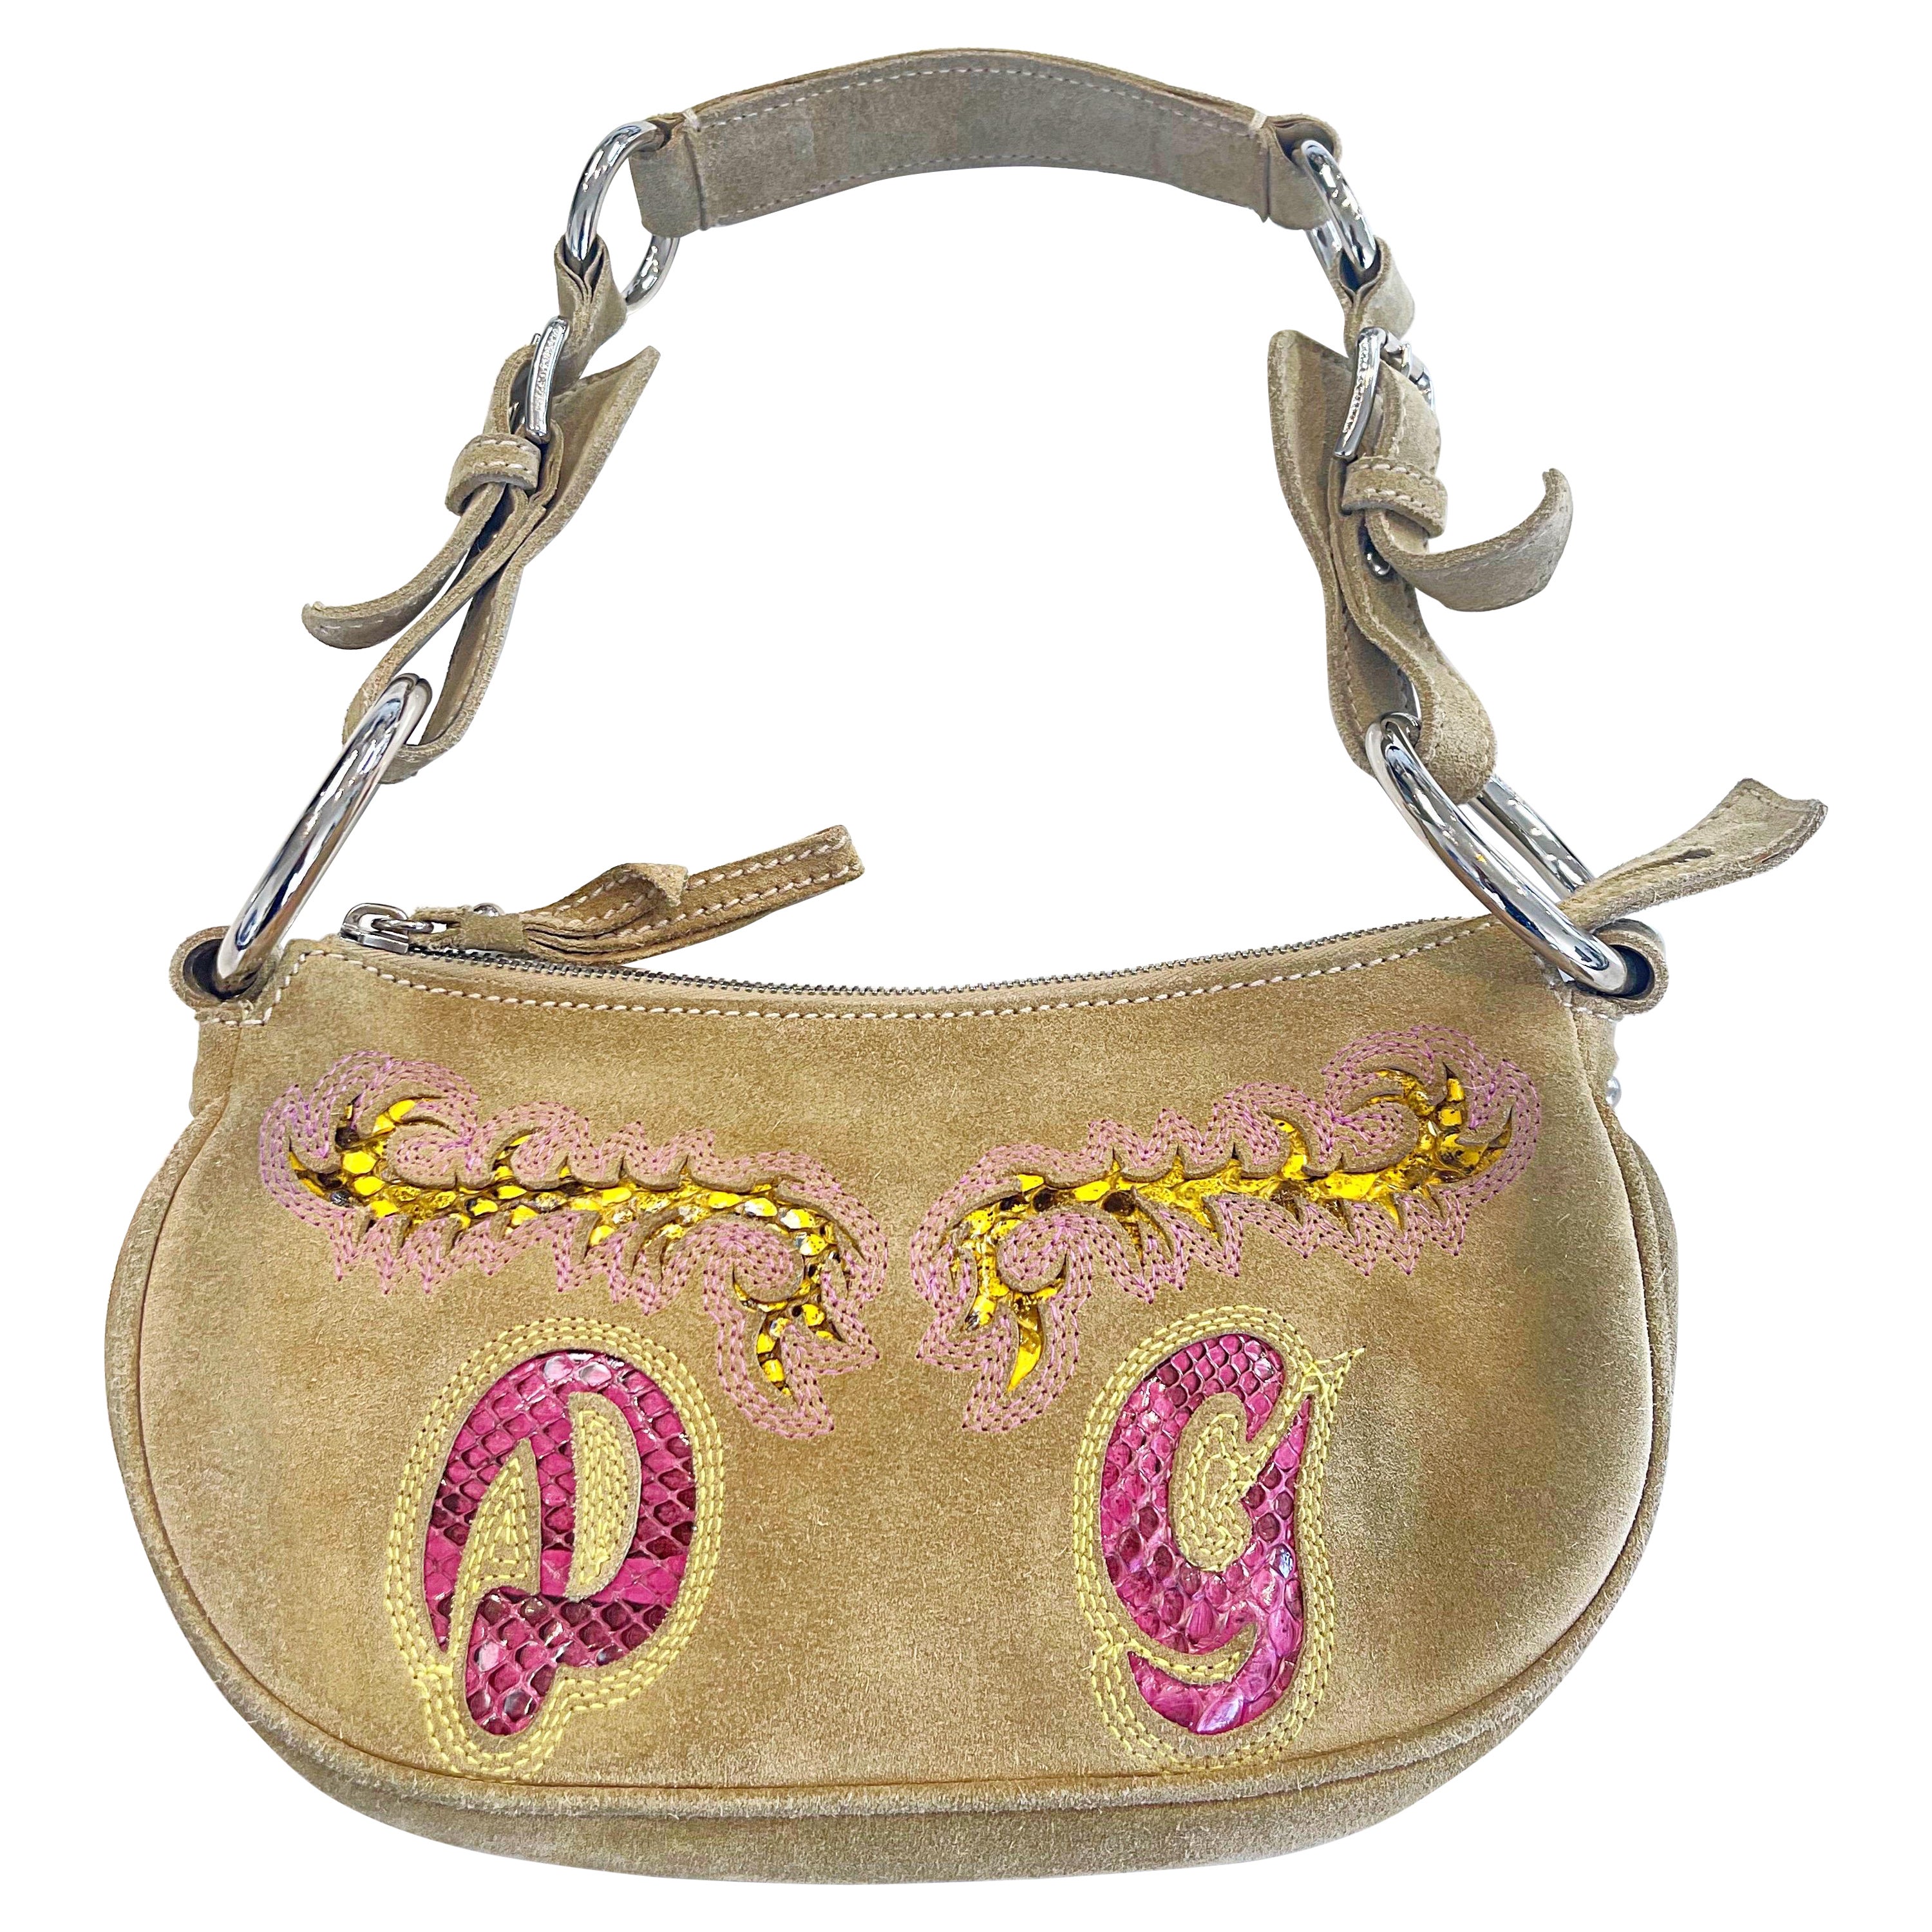 2000s Dolce & Gabbana Tan Suede + Python Snakeskin Vintage Handbag Shoulder Bag For Sale